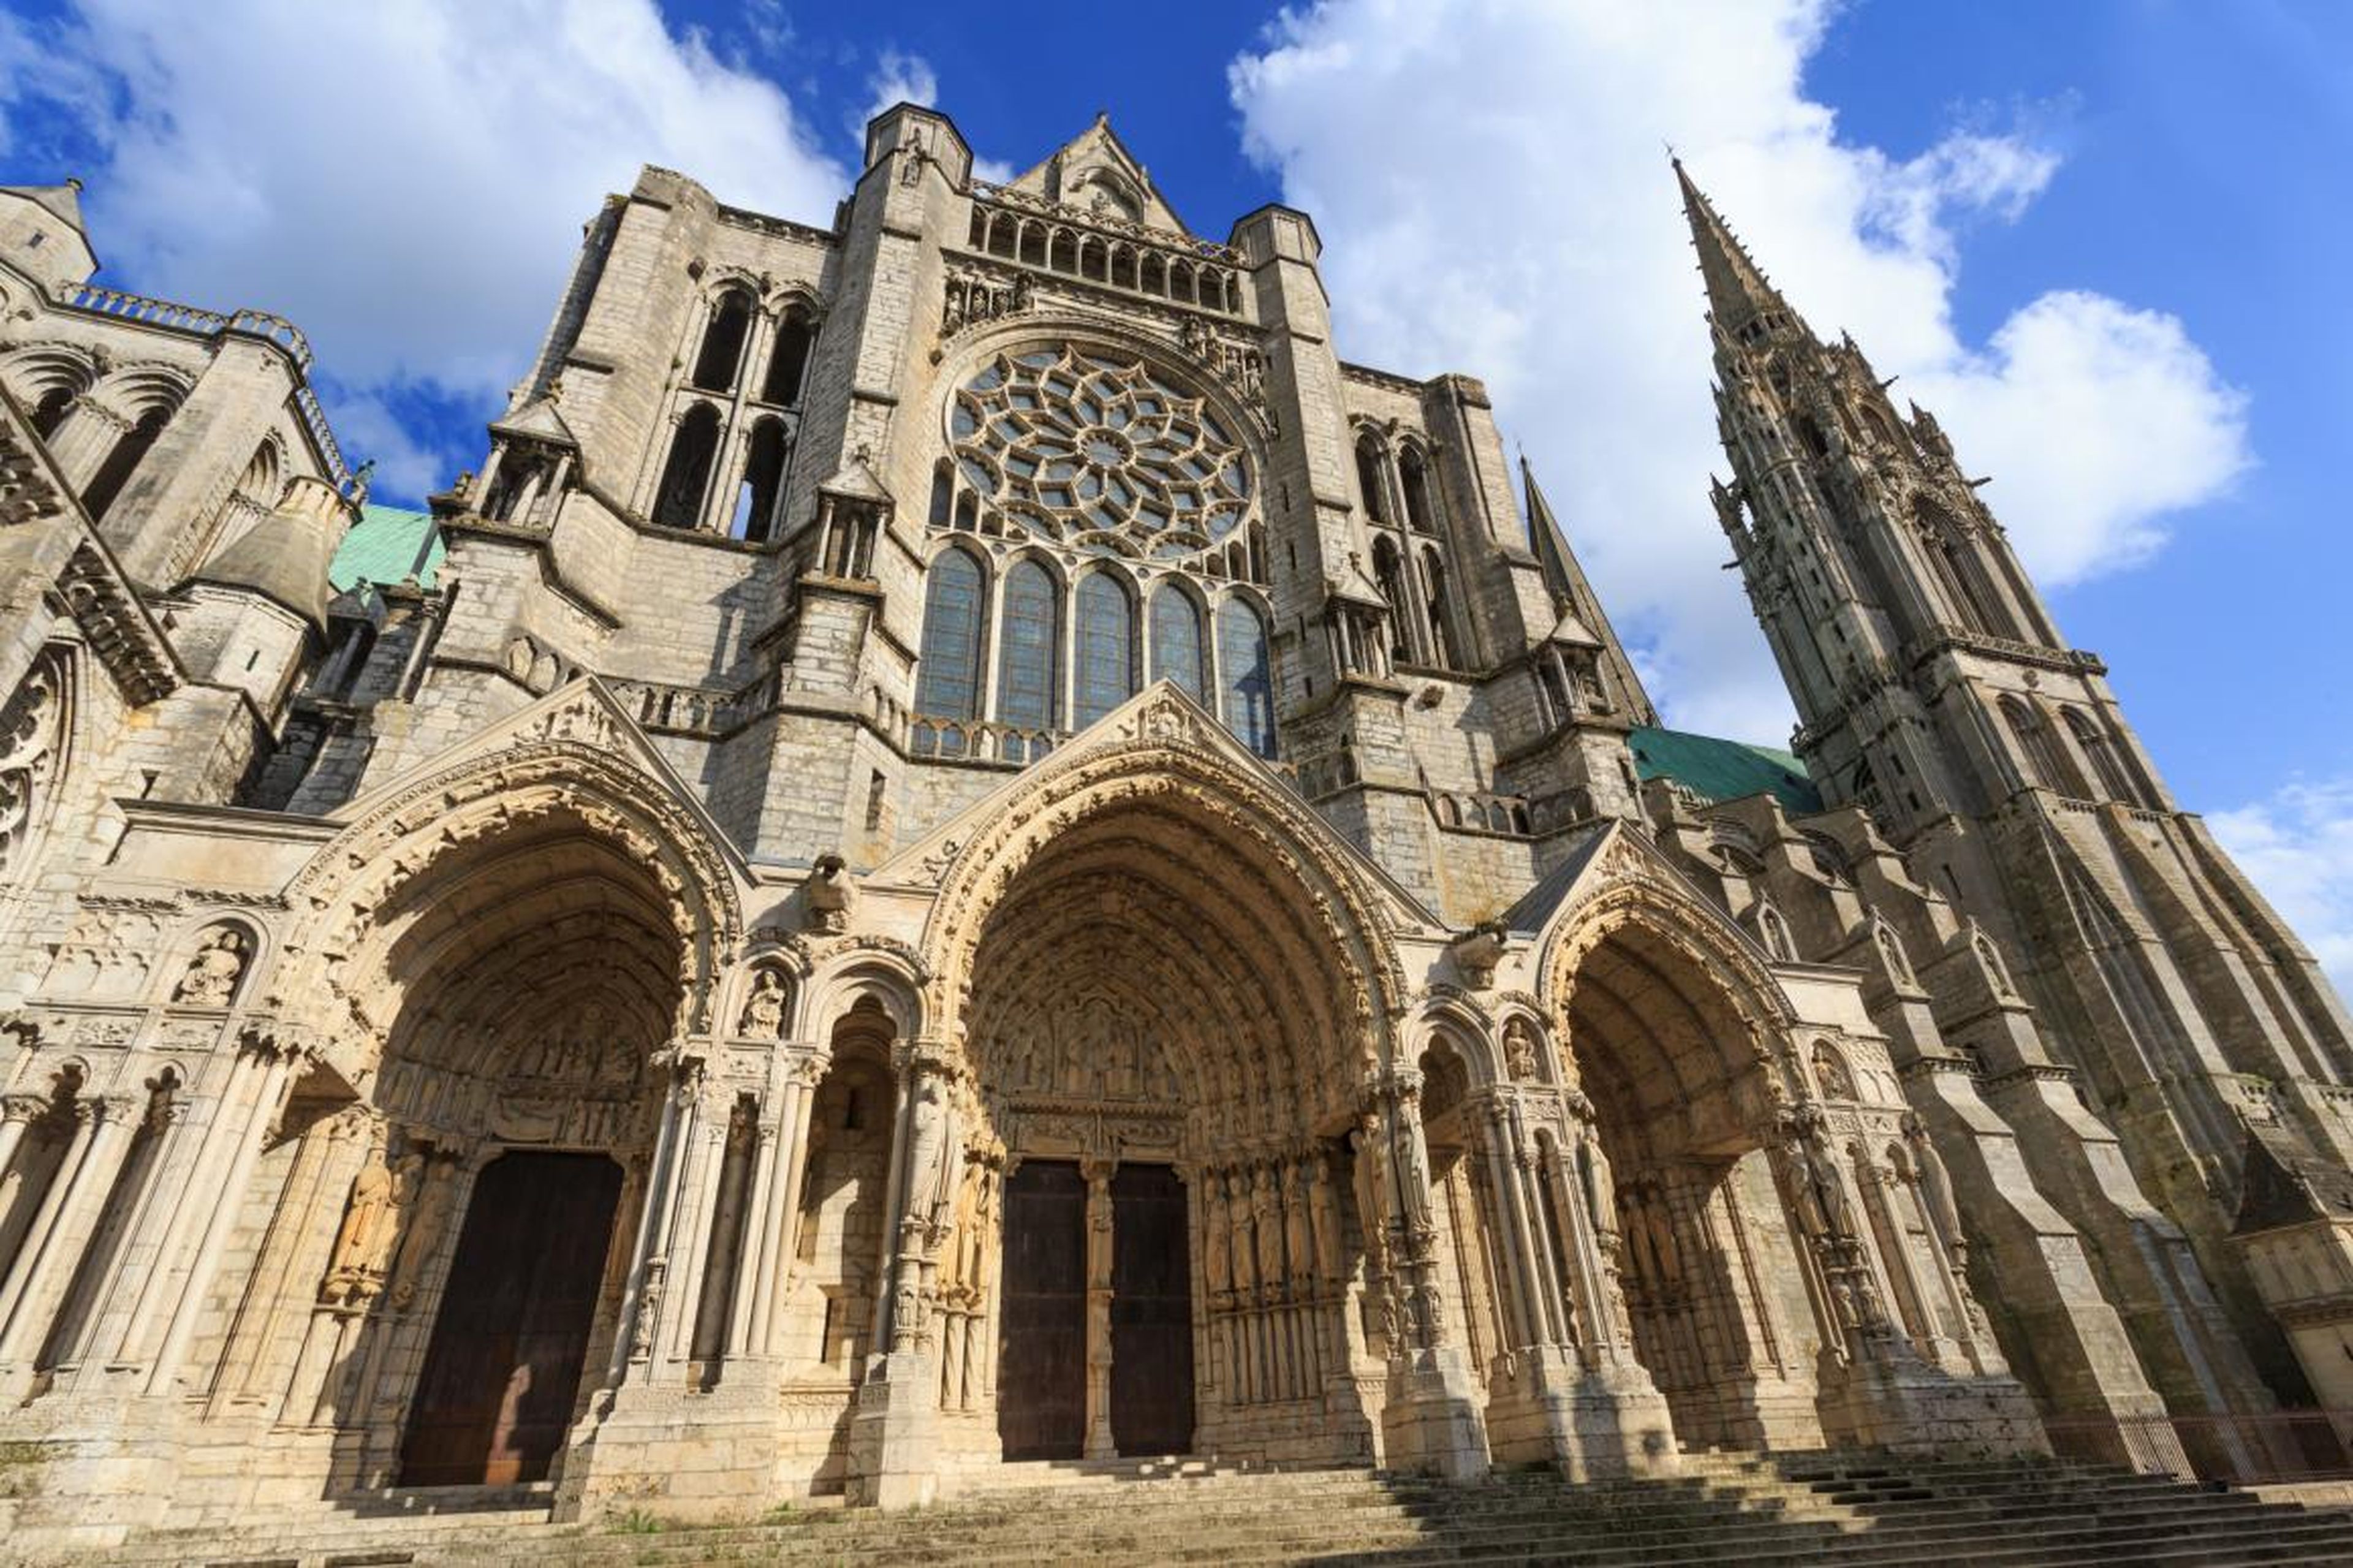 Construida alrededor del año 1200, la Catedral de Chartres, en el norte de Francia, es un ejemplo de arquitectura gótica. Solo hay que mirar los pórticos